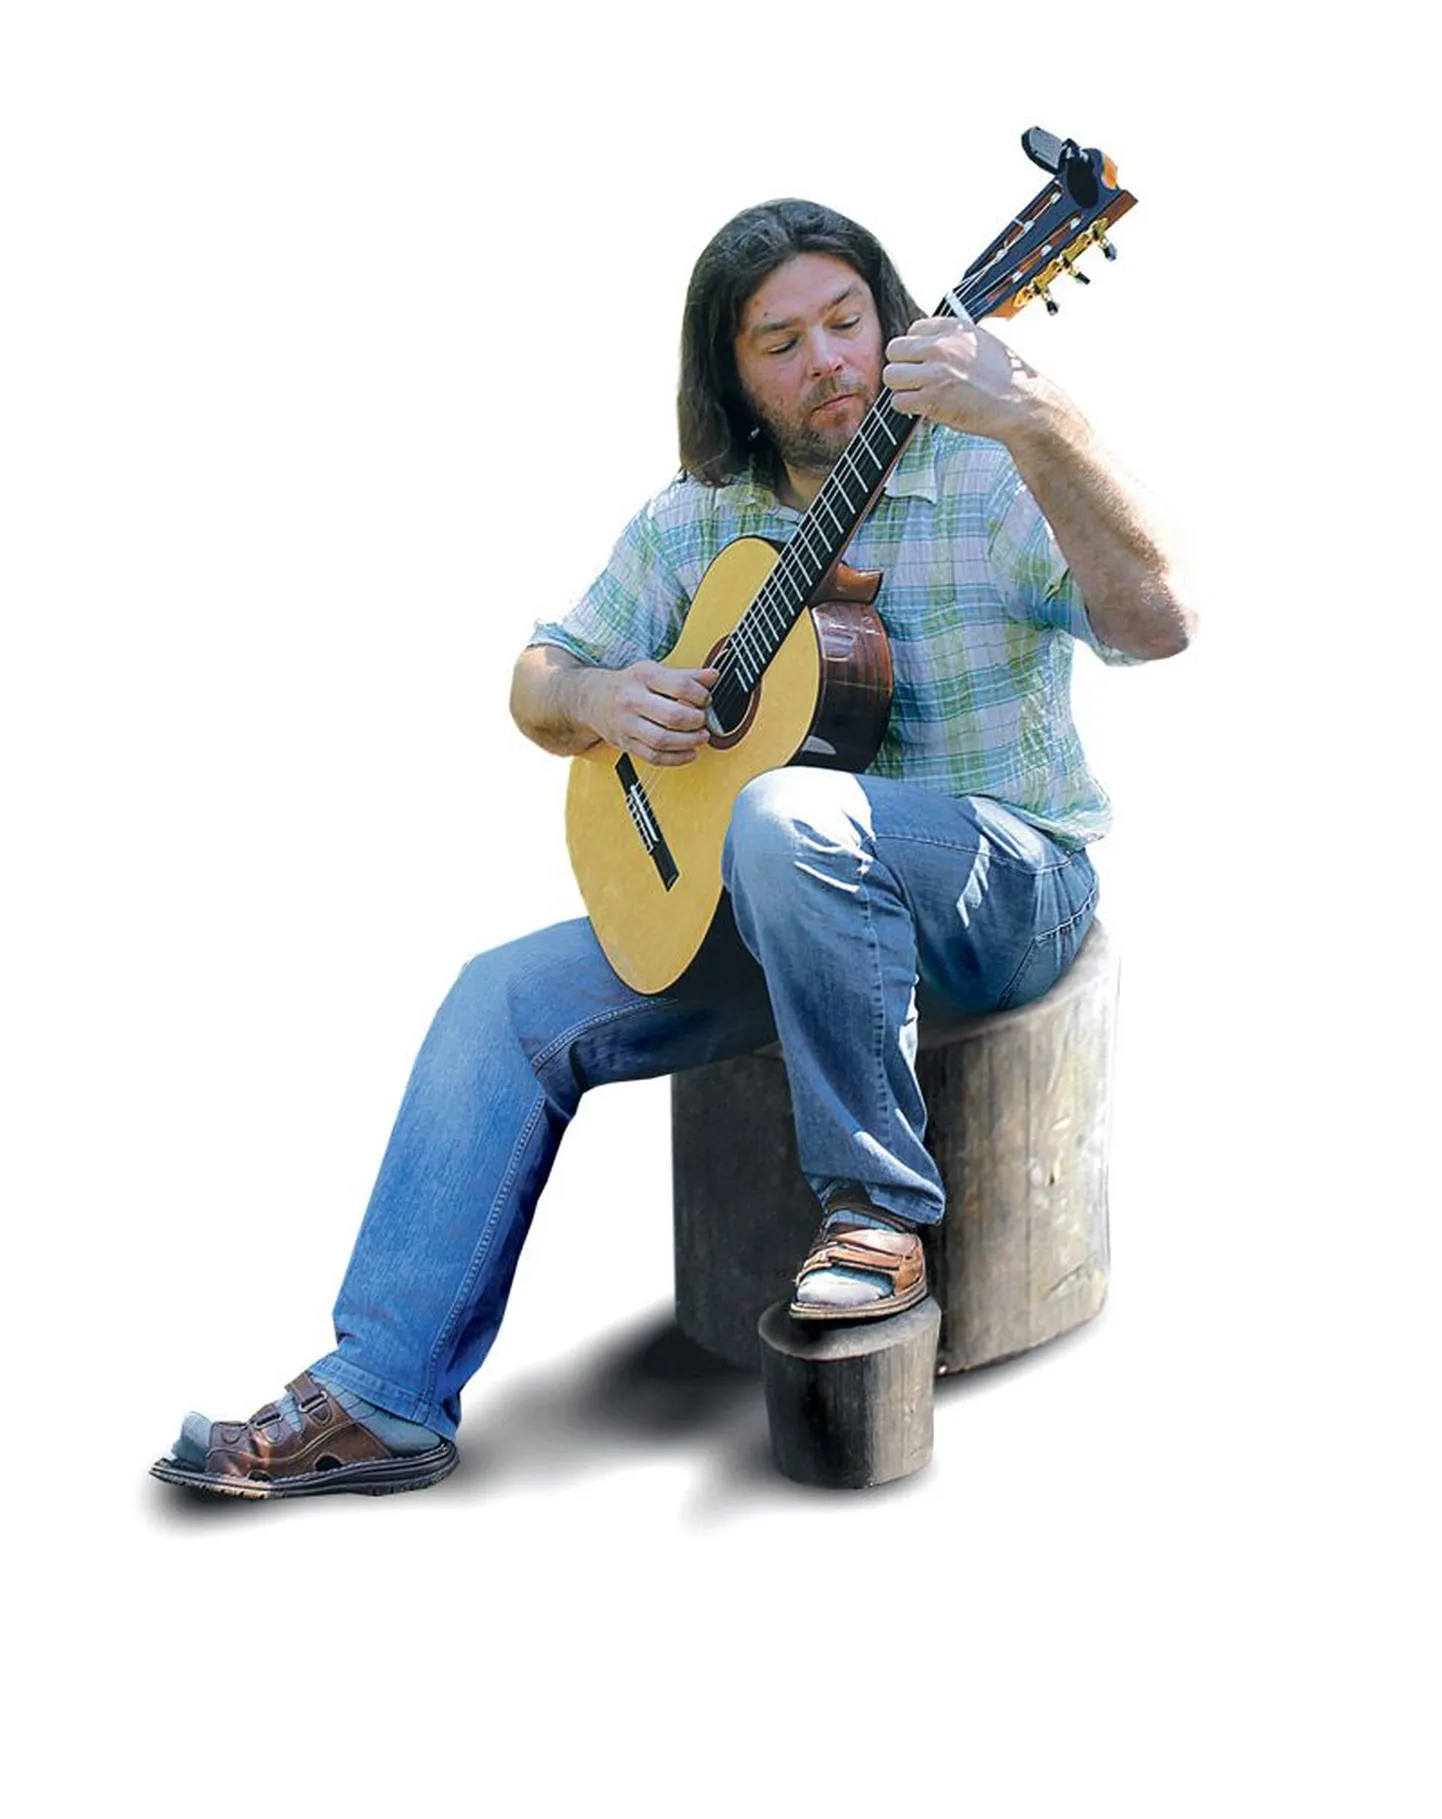 Vaido Petseri kitarrid on väheste kaunistustega. Lihtsus sobib ta meelest põhjamaise temperamendiga hästi. Tema pillil on vaid mõni disaini eripära. Näiteks lõpeb kitarrikael kõlaava kohal sinusoidse lõikega, mis annab võimaluse paigutada sõrmlauale ka 20. astmetraat. Tavaliselt on astmetraate sõrmlaual 19. Samasugune sinusoidne lõige on kitarrikaela otsas. «See joon sümboliseerib heli võnkumist,» märgib mees. «Või vastandite ühtsust, sümboleid yin ja yang.»